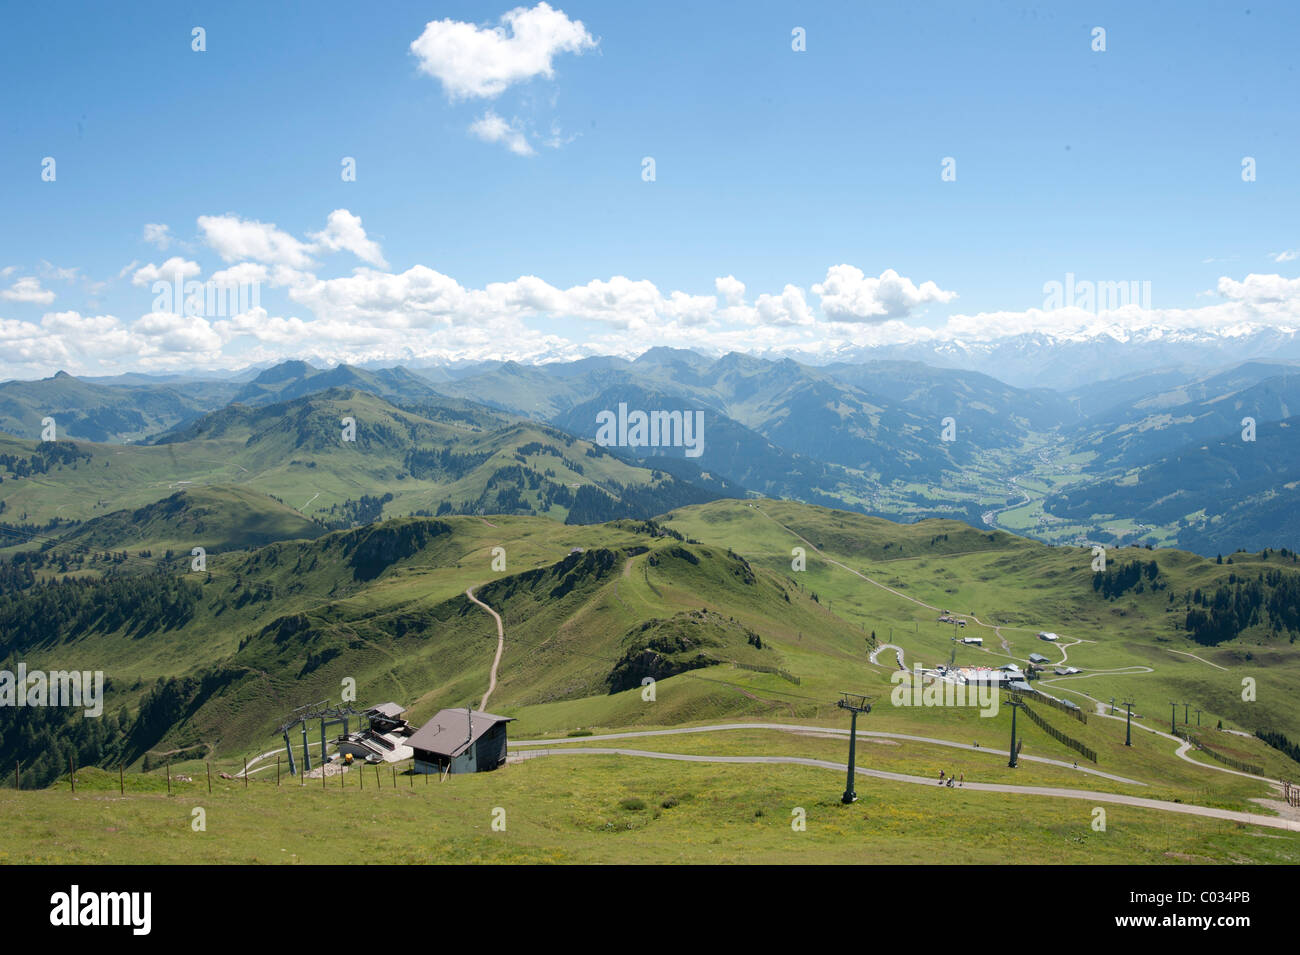 Kitzbuehel mountain pastures with main ridge of the Alps, Tyrol, Austria, Europe Stock Photo